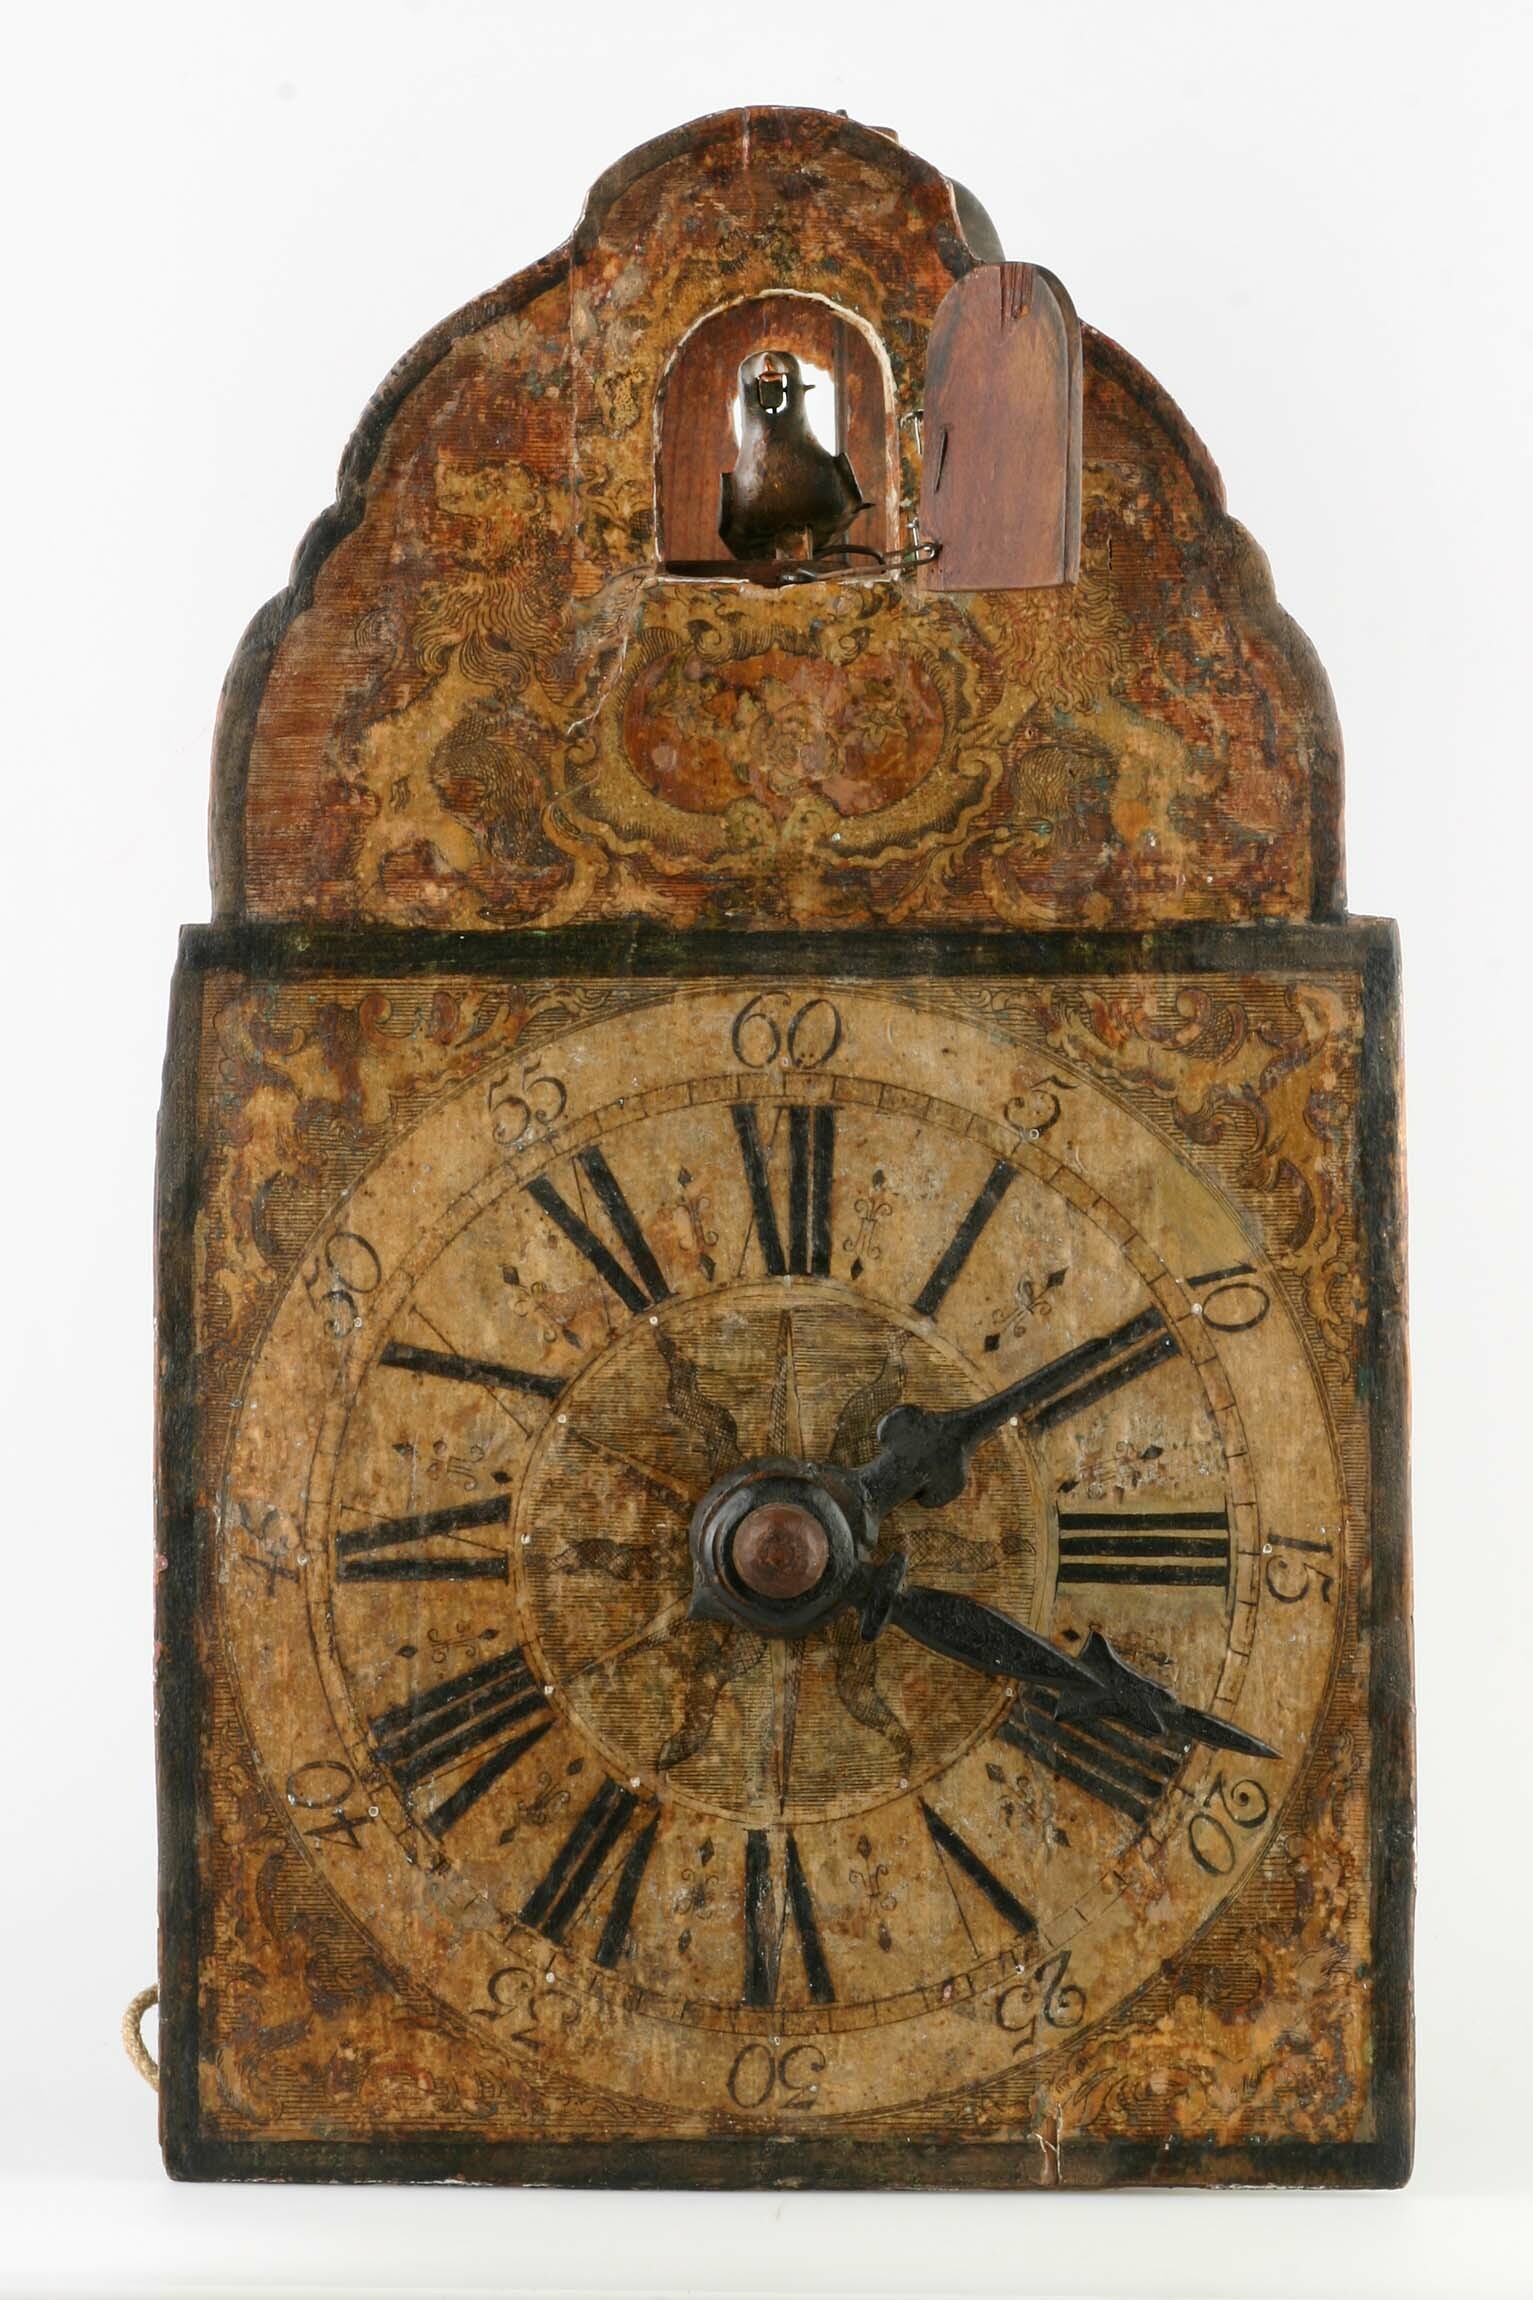 Holzräderuhr mit Kuckuck, Johannes Wildi, Eisenbach, um 1790 (Deutsches Uhrenmuseum CC BY-SA)